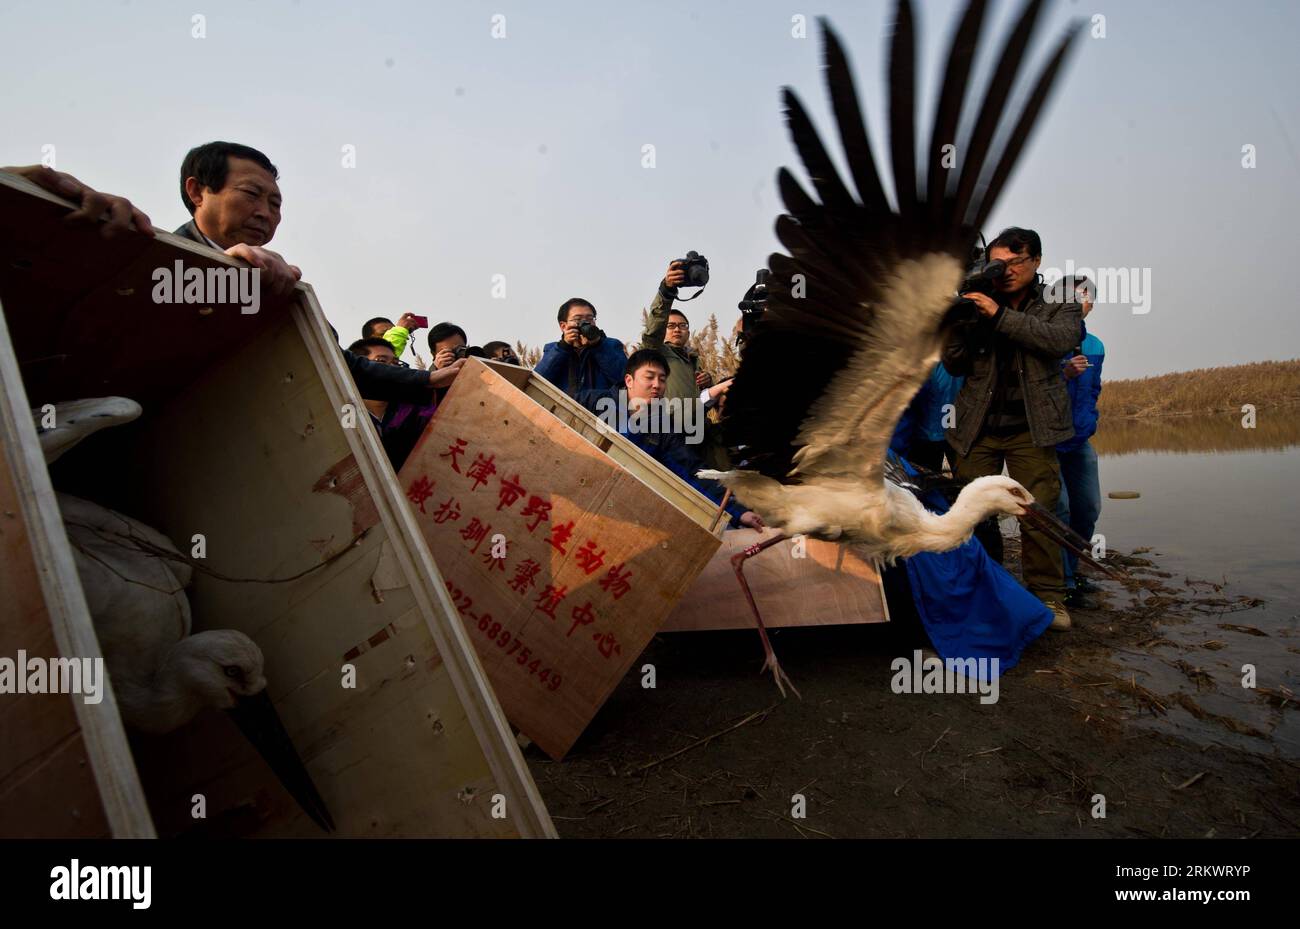 Bildnummer : 58725402 Datum : 21.11.2012 Copyright : imago/Xinhua (121121) -- TIANJIN, 21 novembre 2012 (Xinhua) -- une cigogne blanche orientale est libérée dans la réserve naturelle des zones humides de Beidagang à Tianjin, dans le nord de la Chine, le 21 novembre 2012. Un total de 13 cigognes blanches orientales ont été sauvées par une agence de sauvetage et d’élevage d’animaux sauvages à Tianjin après qu’elles aient été trouvées empoisonnées depuis novembre 11. Ils ont été relâchés mercredi après avoir été soignés. La cigogne blanche orientale est répertoriée sous le plus haut niveau de protection animale de la Chine, car seulement 2 500 à 3 000 d'entre elles existent actuellement dans le pays. L'espèce, qui rep Banque D'Images